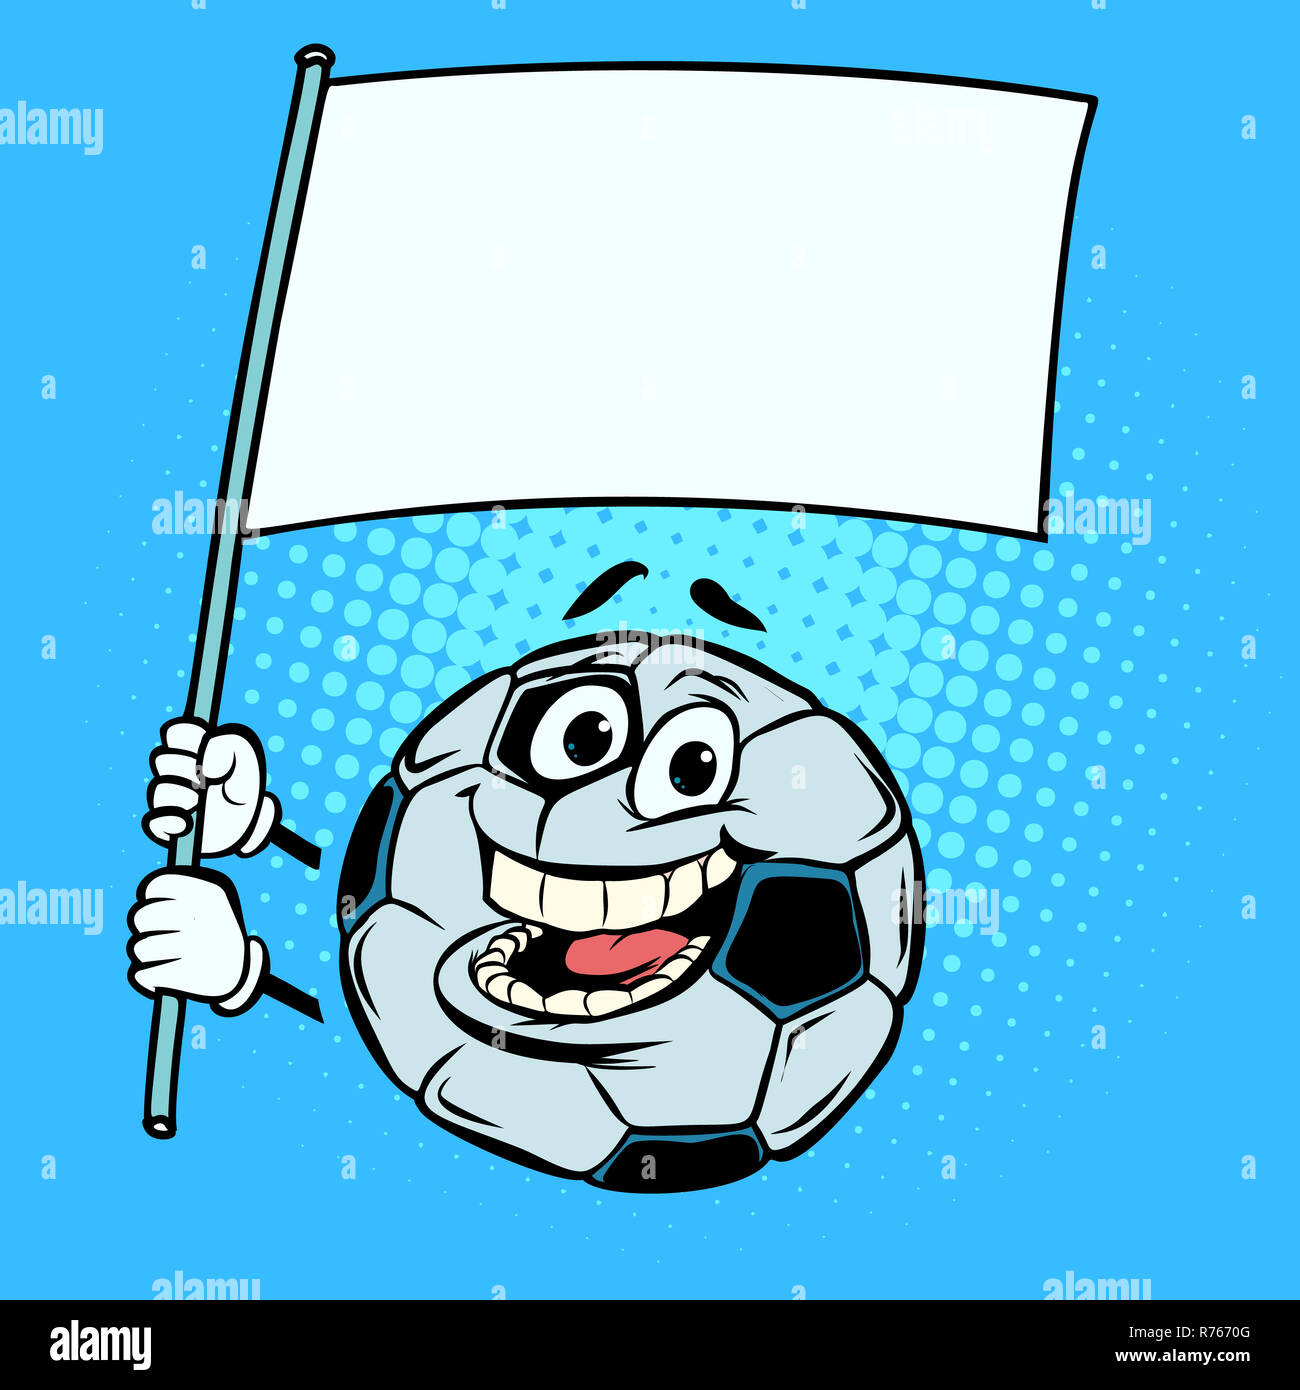 Nationalflagge Vorlage. Fußball Fußball. Lustige Zeichen Stockfotografie -  Alamy